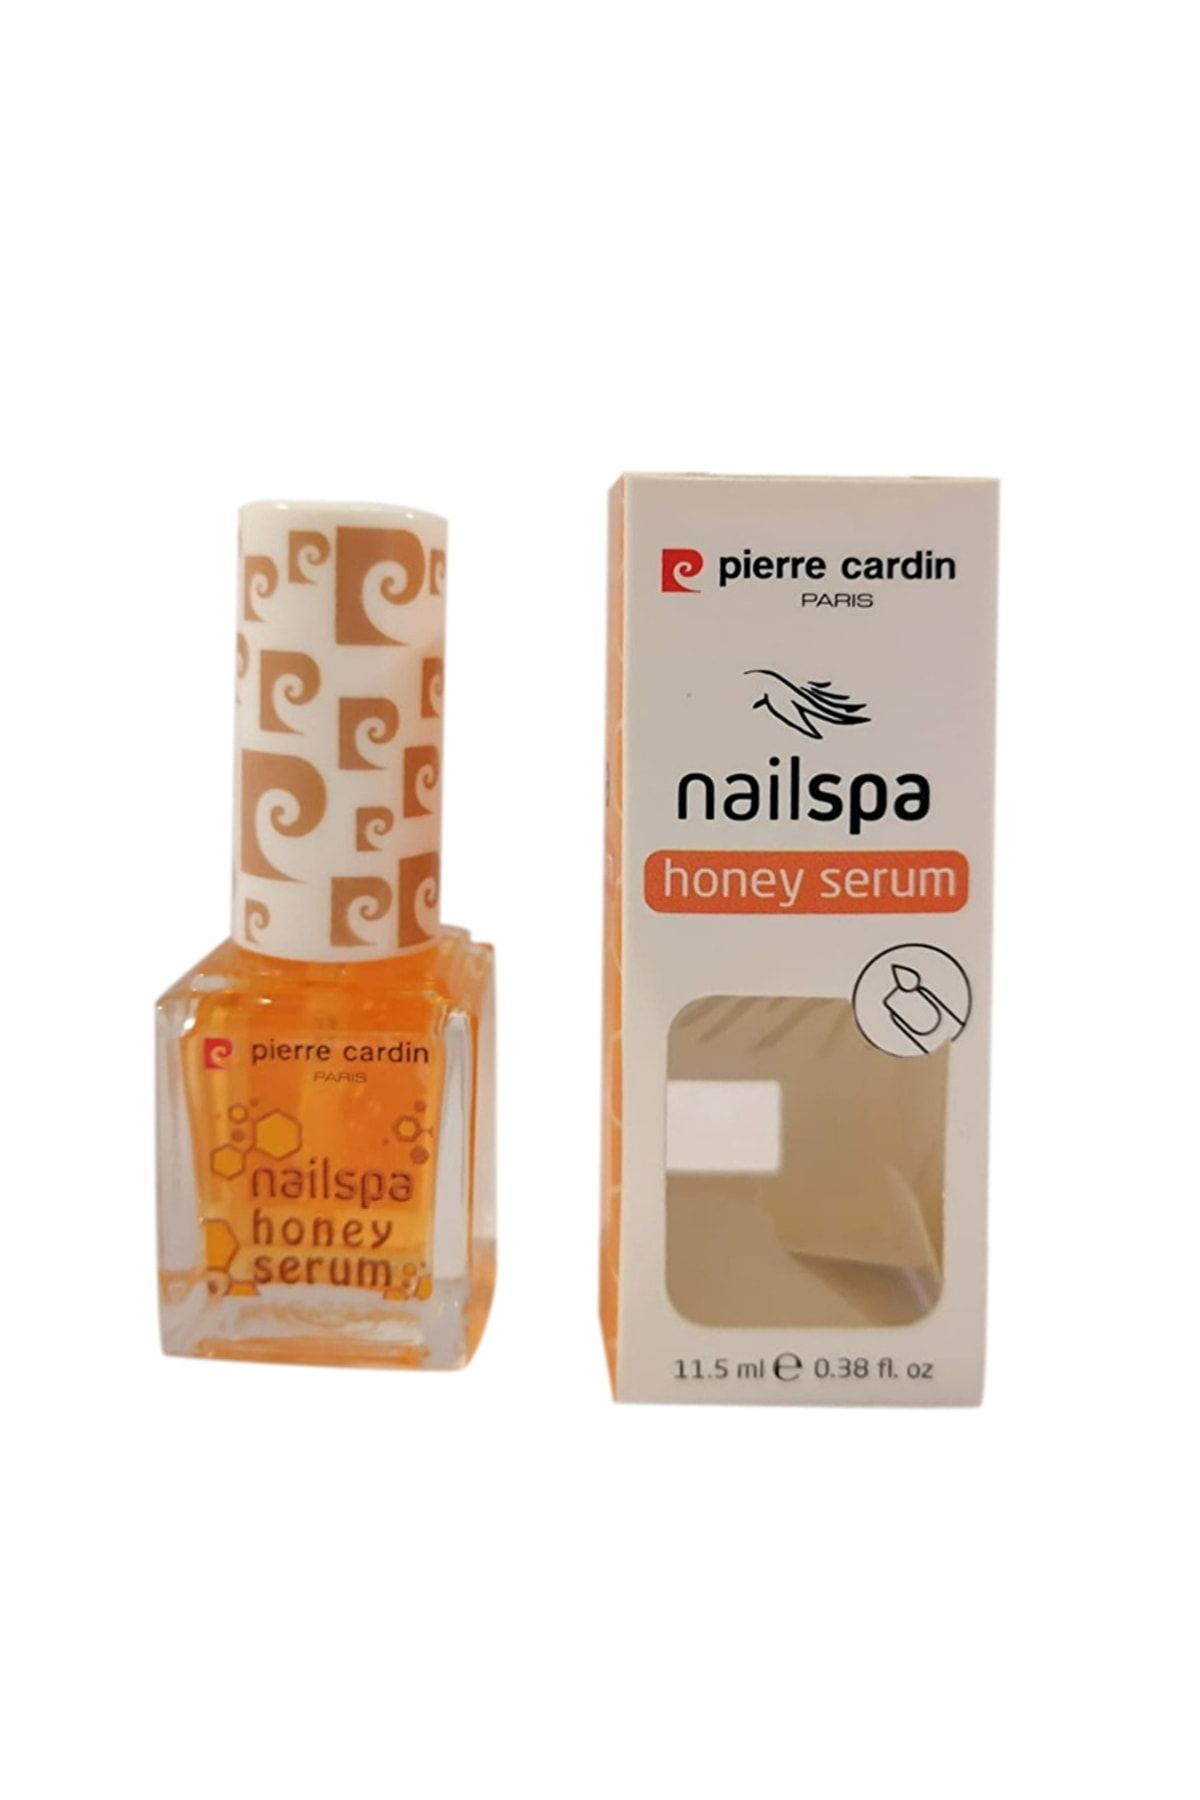 Pierre Cardin 14300 Nailspa Honey Serum Bal Rengi Kadın Tırnak Bakım Yağı 11,5 Ml